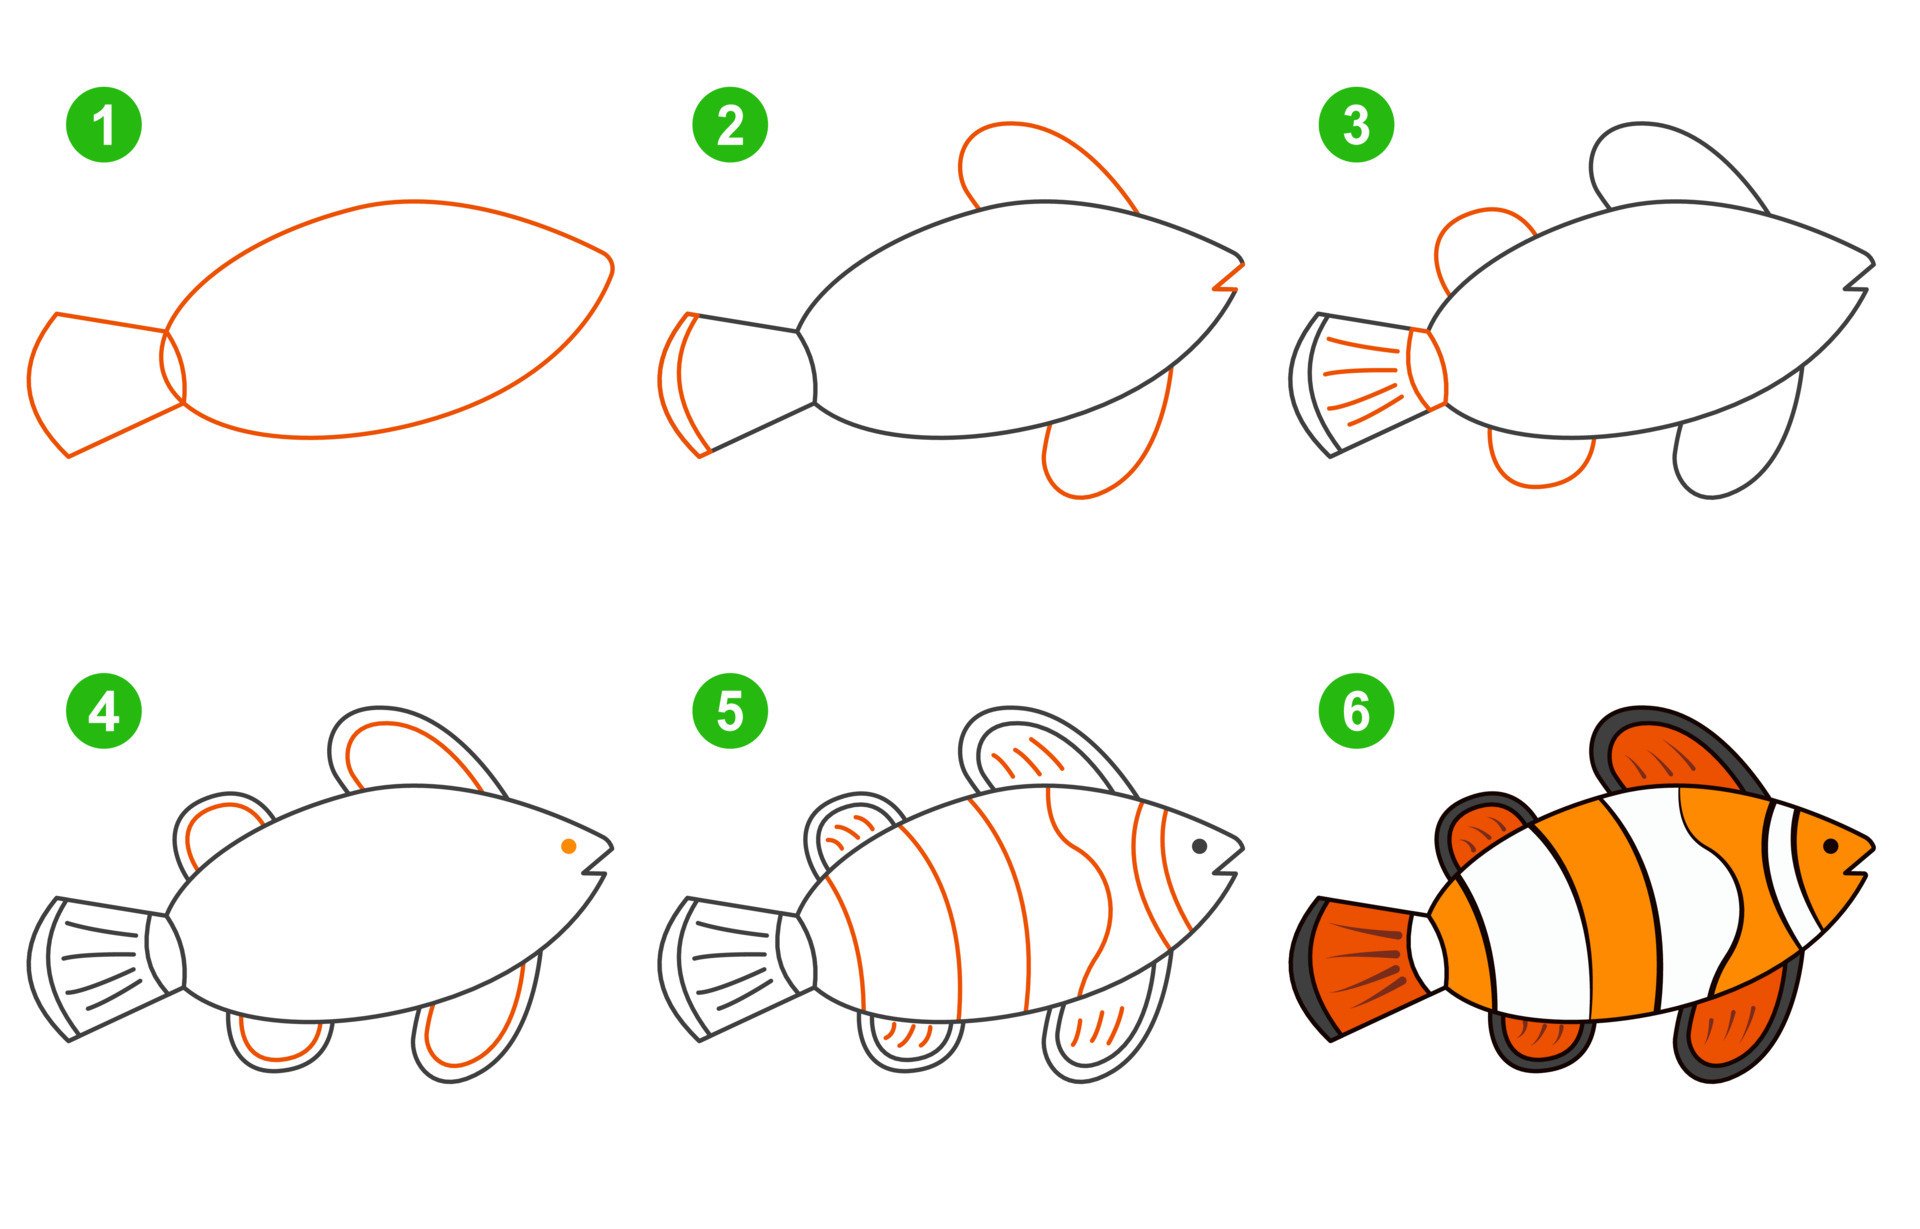 картинки рыбок для рисования